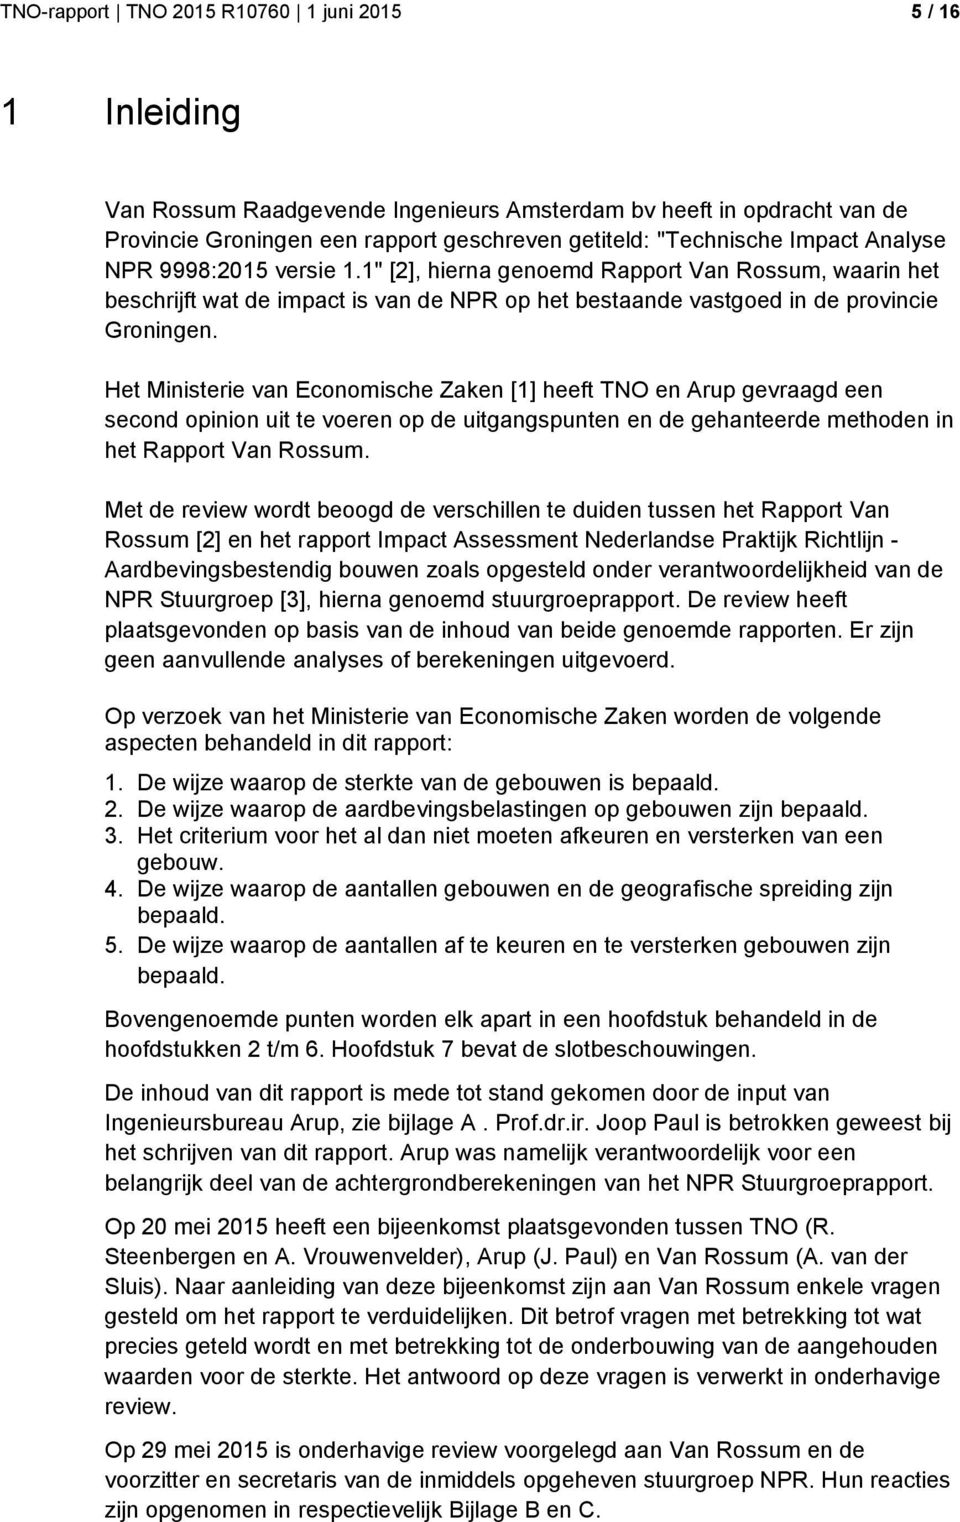 Het Ministerie van Economische Zaken [1] heeft TNO en Arup gevraagd een second opinion uit te voeren op de uitgangspunten en de gehanteerde methoden in het Rapport Van Rossum.